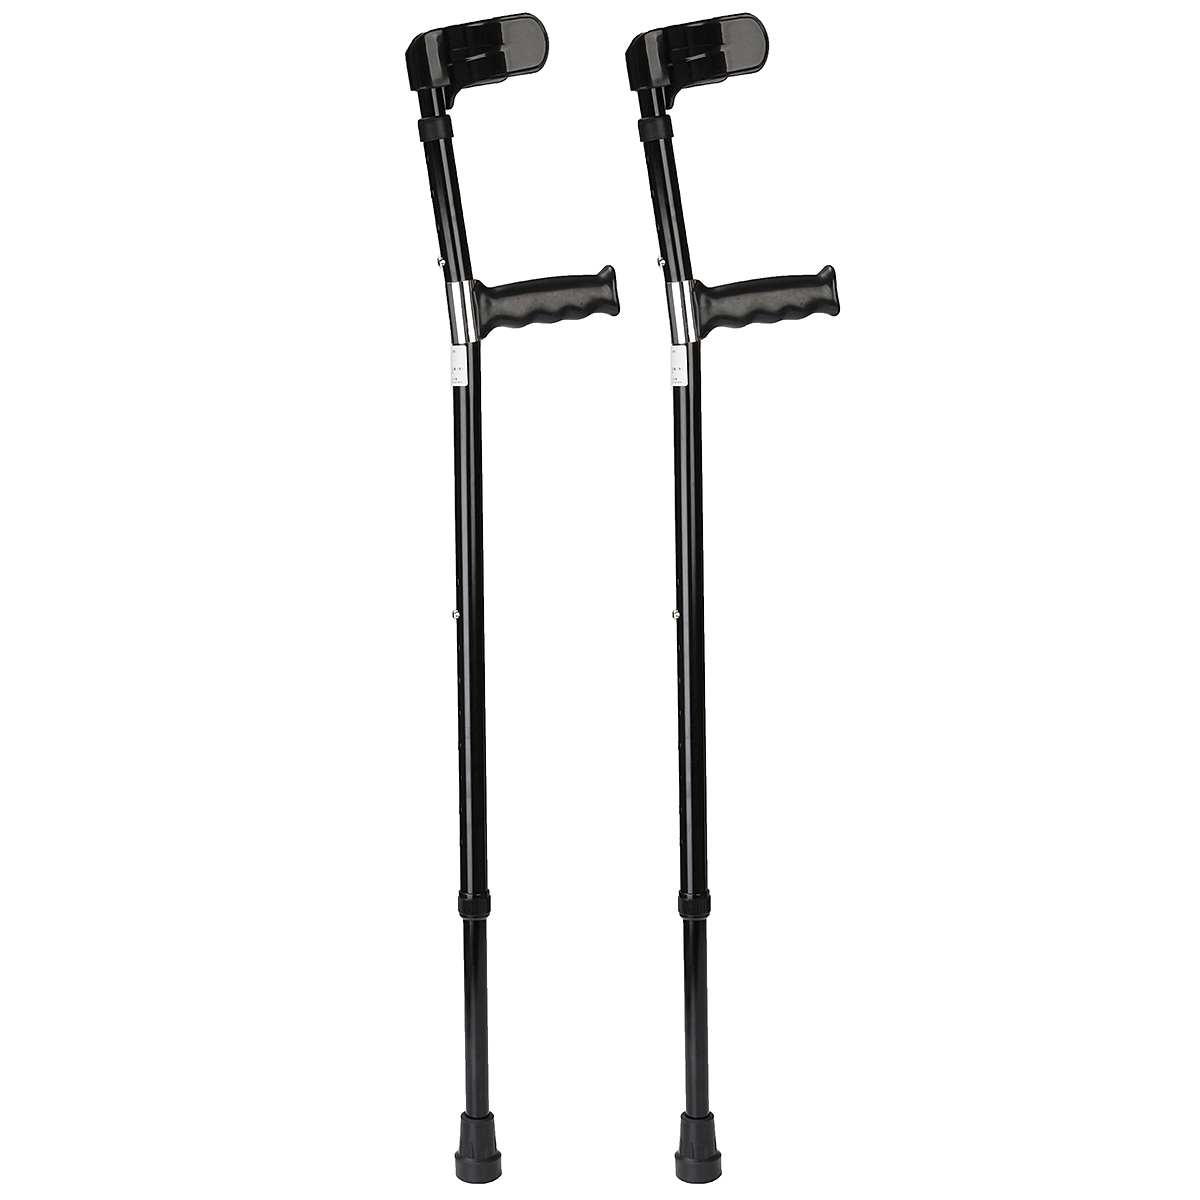 A-Pair-of-Adjustable-Aluminum-Alloy-Armpit-Crutches-Forearm-Crutches-Elbow-Crutches-Climbing-Sticks-1645522-11